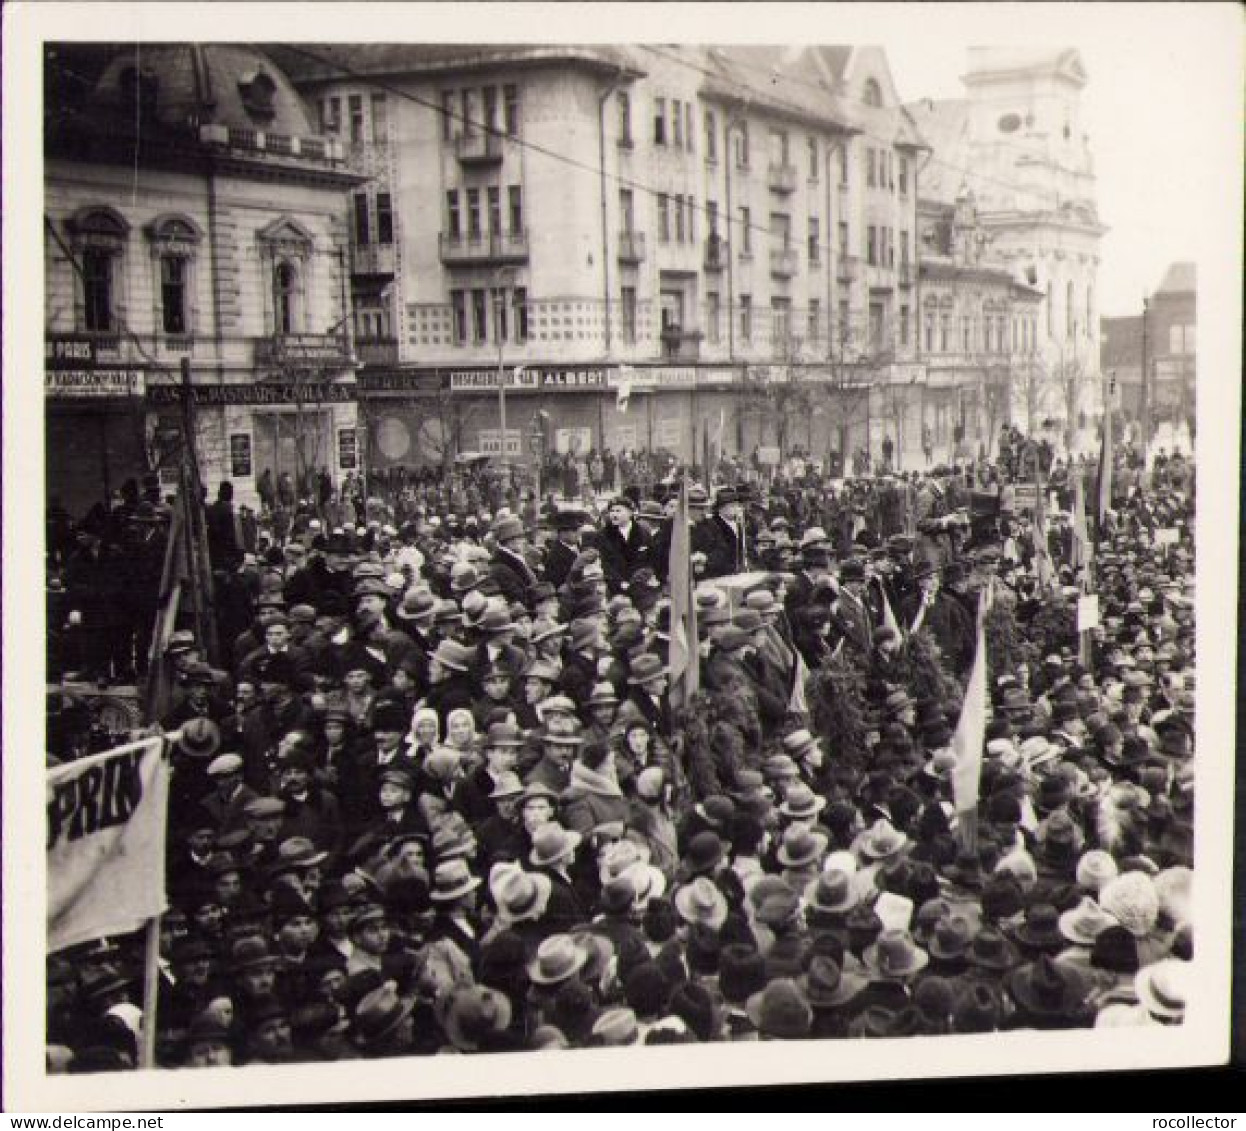 Mare Manifestație Antirevizionistă La Oradea și Teodor Neș, Anii 1930 P1540 - Orte